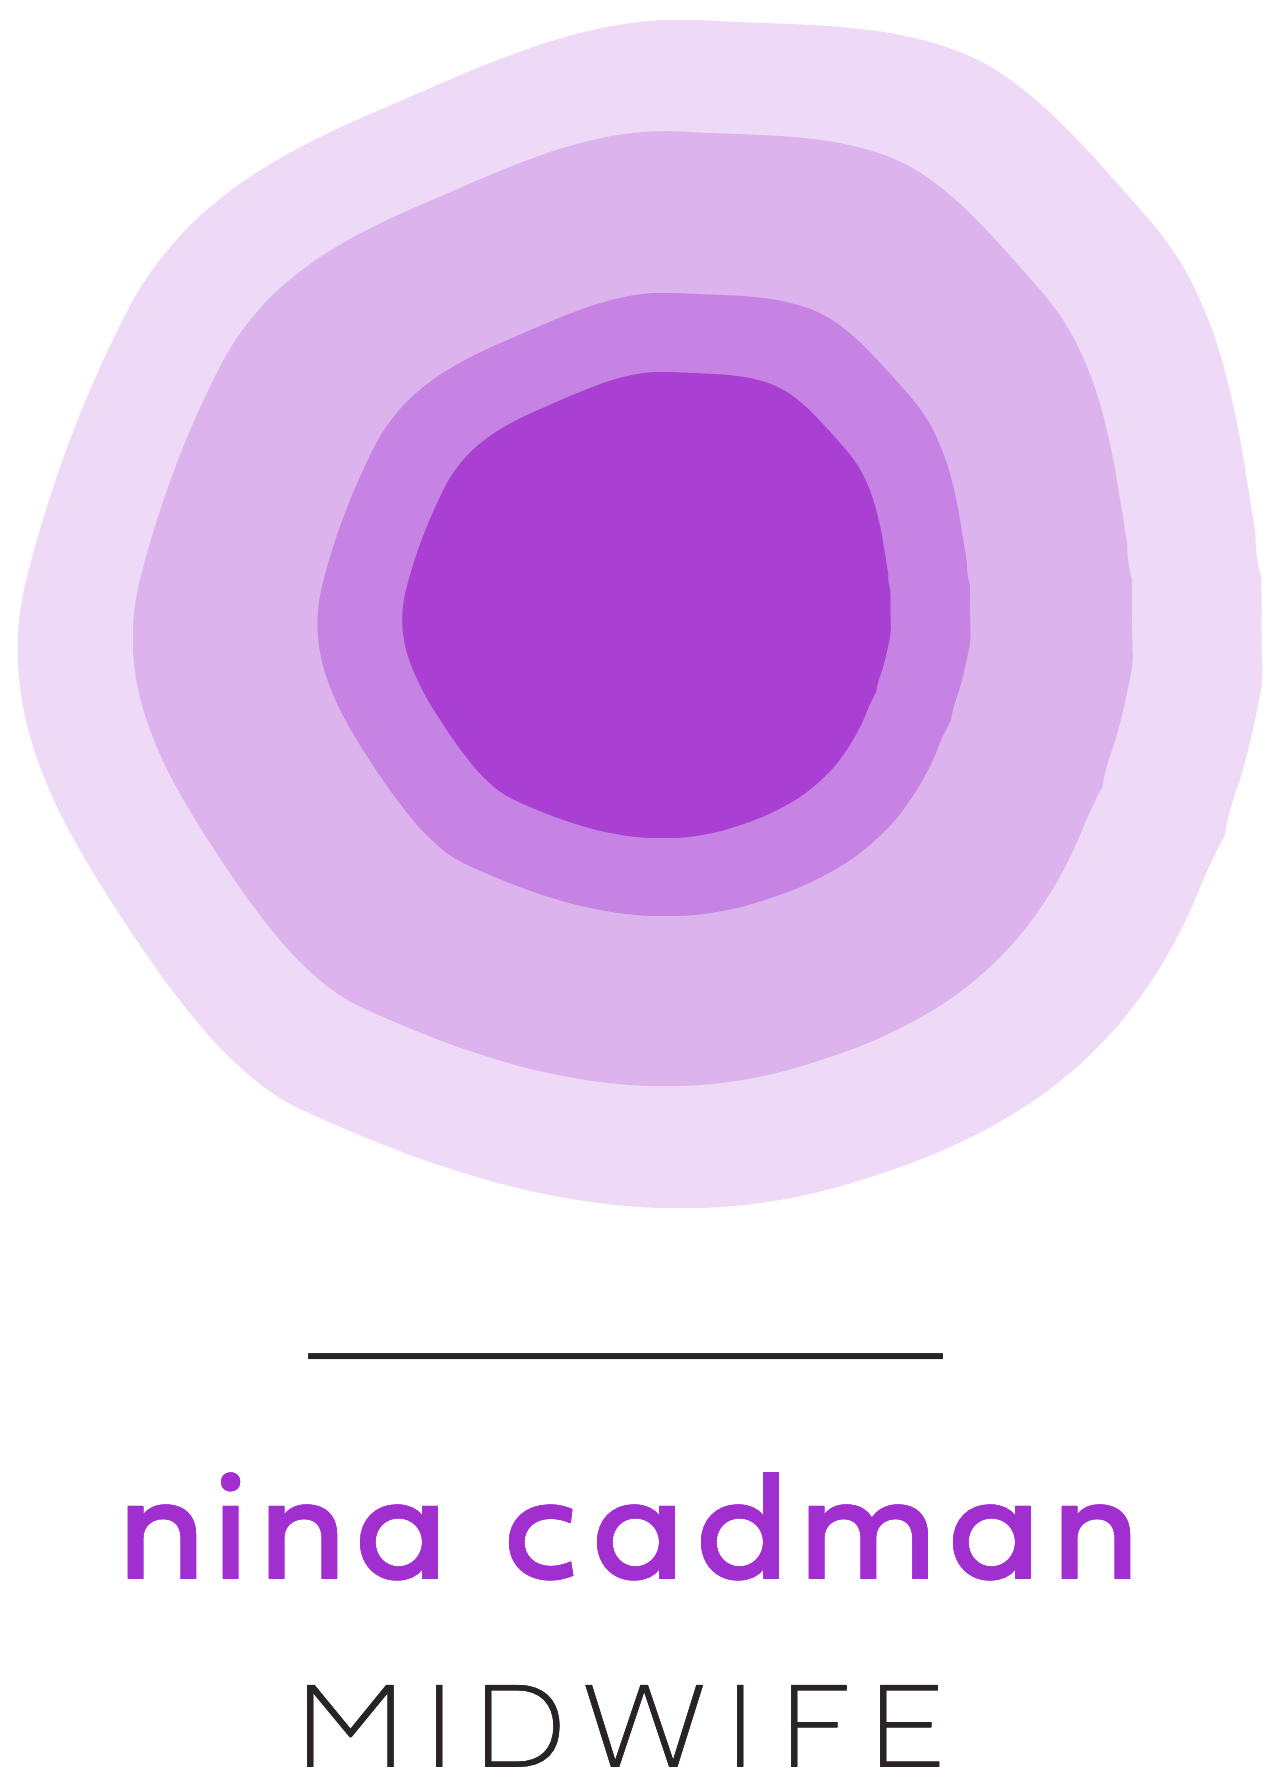 Nina Cadman Midwife